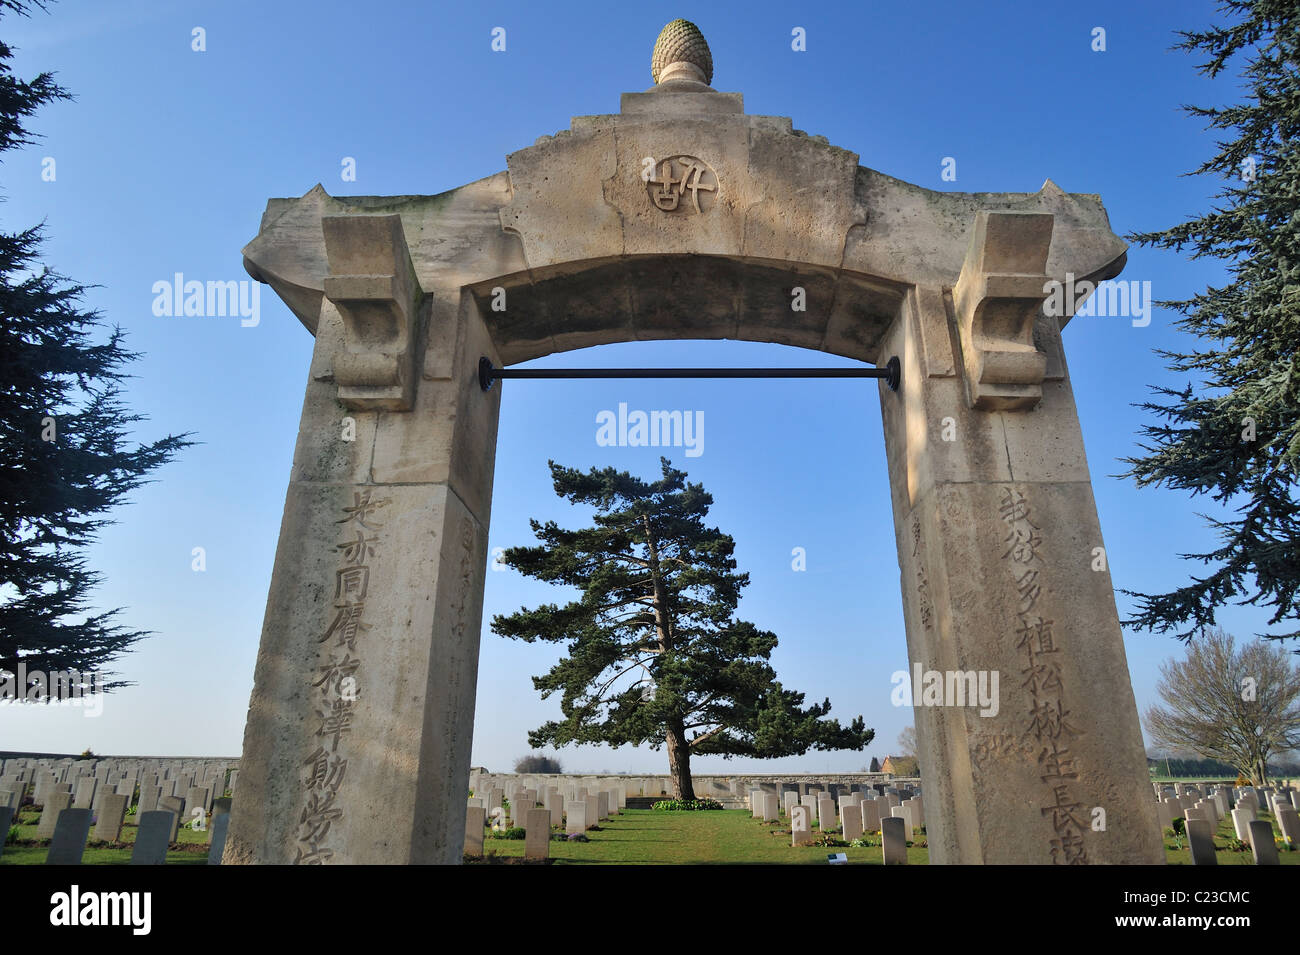 Porte d'entrée de Première Guerre mondiale, un cimetière de la PREMIÈRE GUERRE MONDIALE chinoise des ouvriers à Noyelles-sur-Mer, Baie de Somme, Picardie, France Banque D'Images